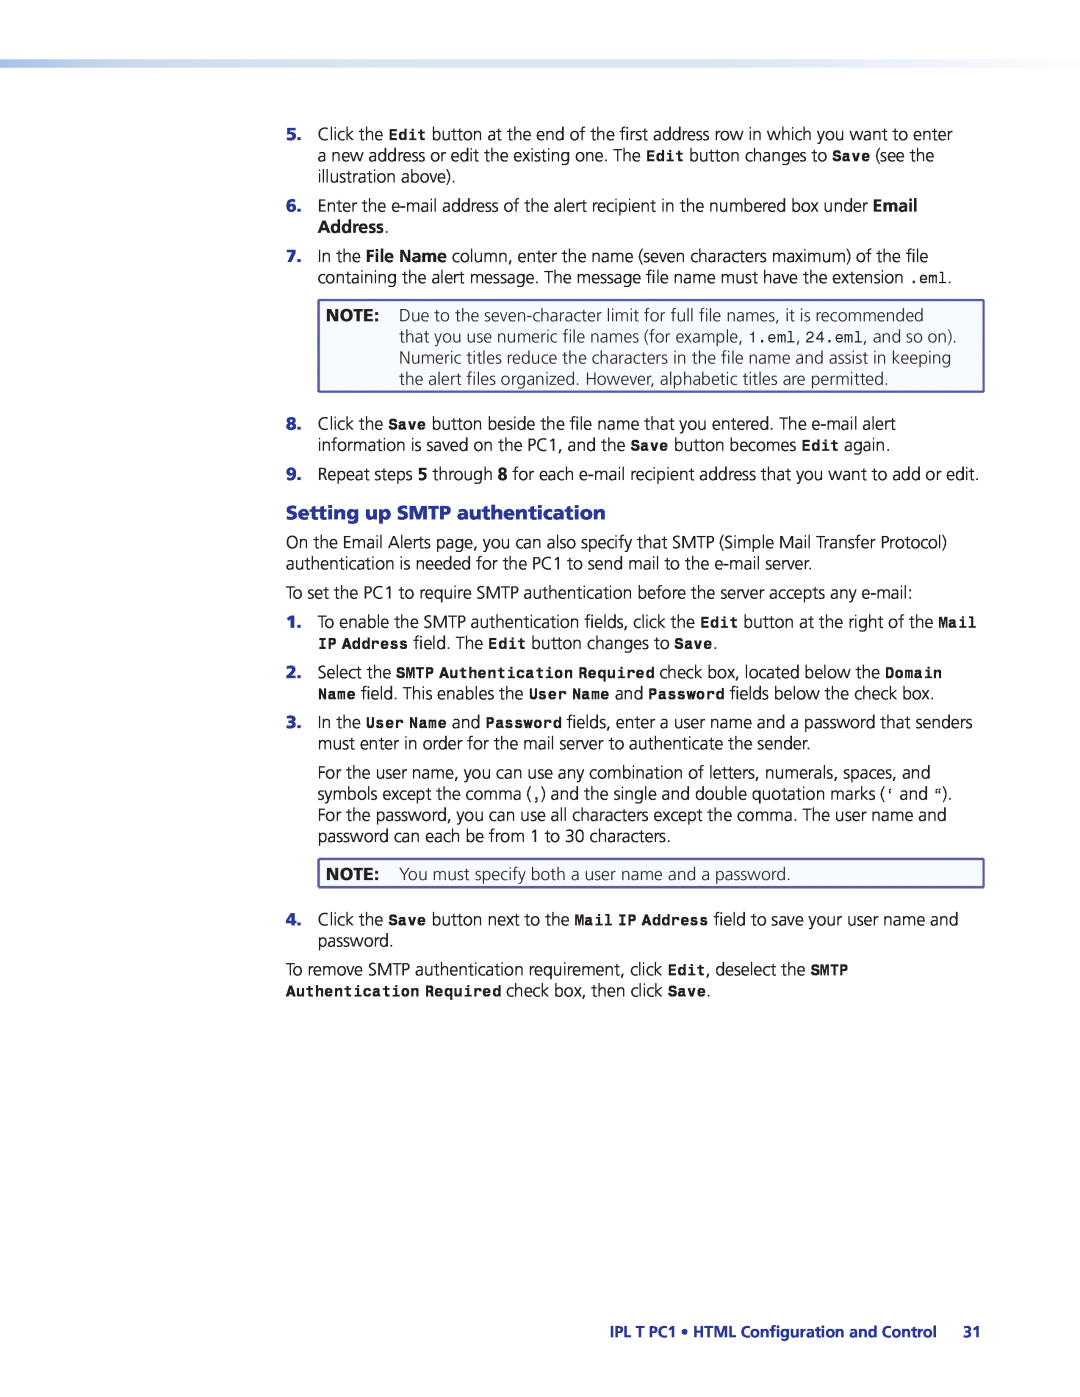 Extron electronic IPL T PC1i manual Setting up SMTP authentication 